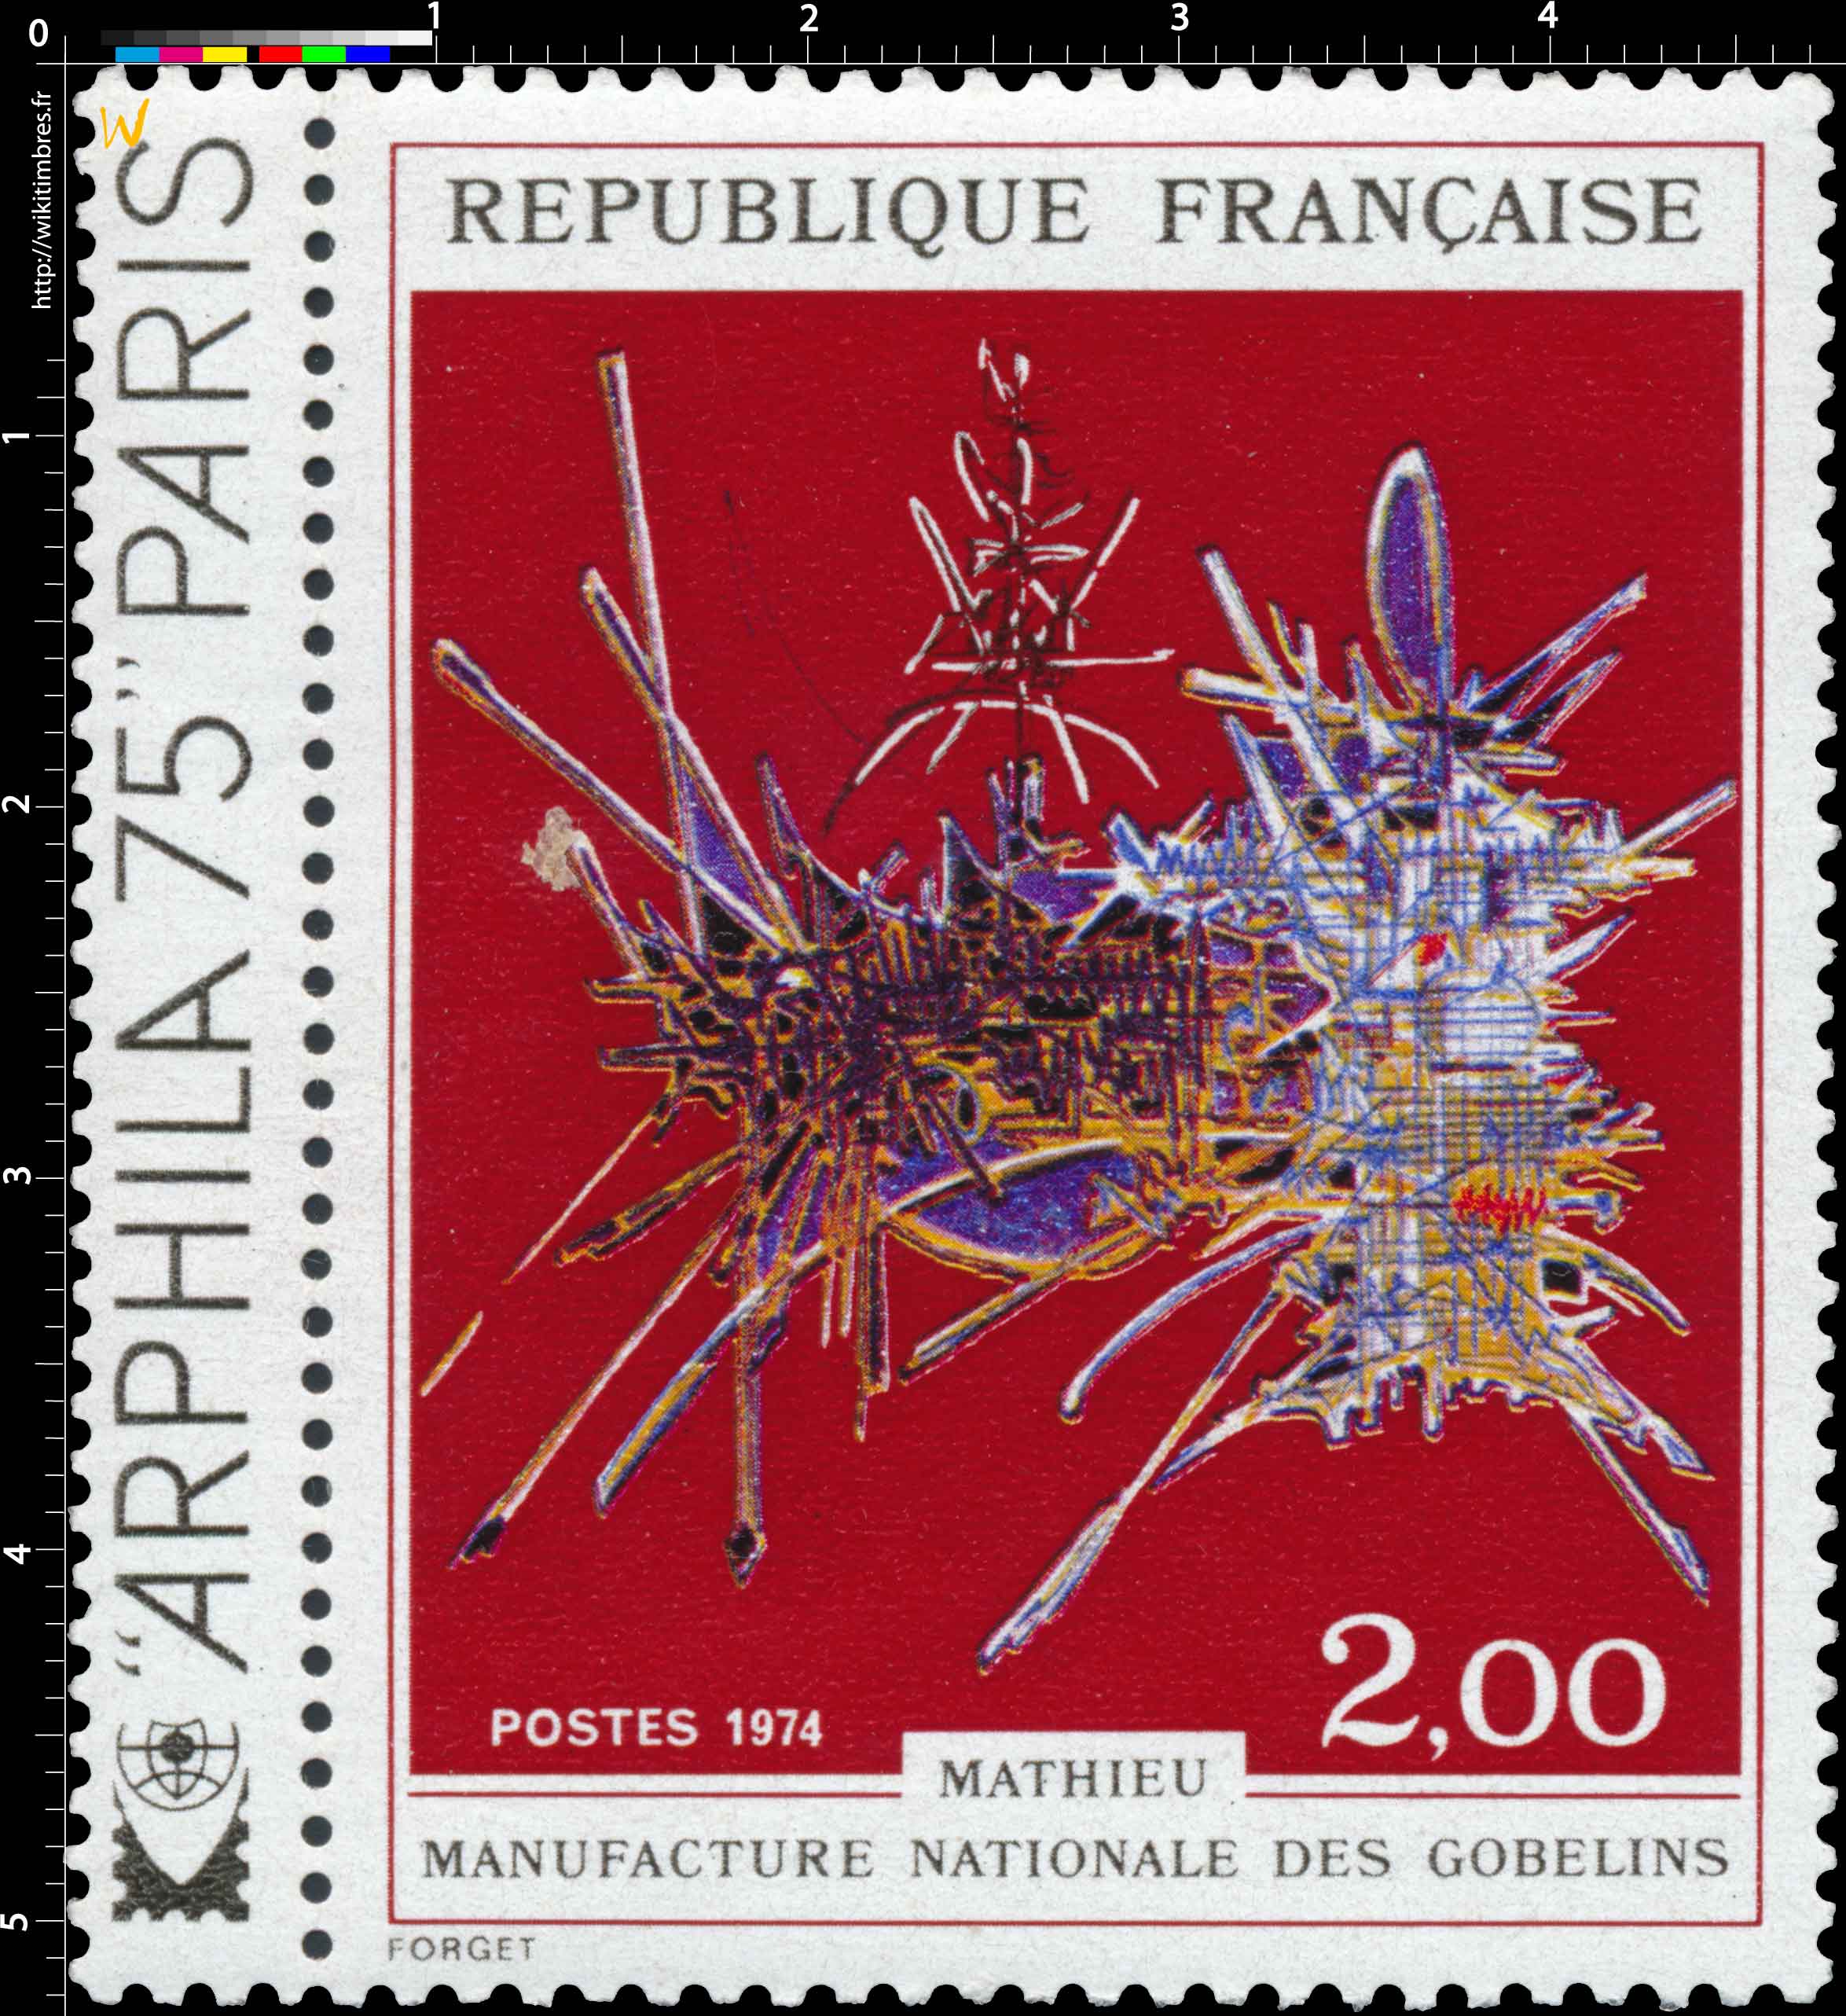 1974 MATHIEU MANUFACTURE NATIONALE DES GOBELINS ARPHILA 75 PARIS